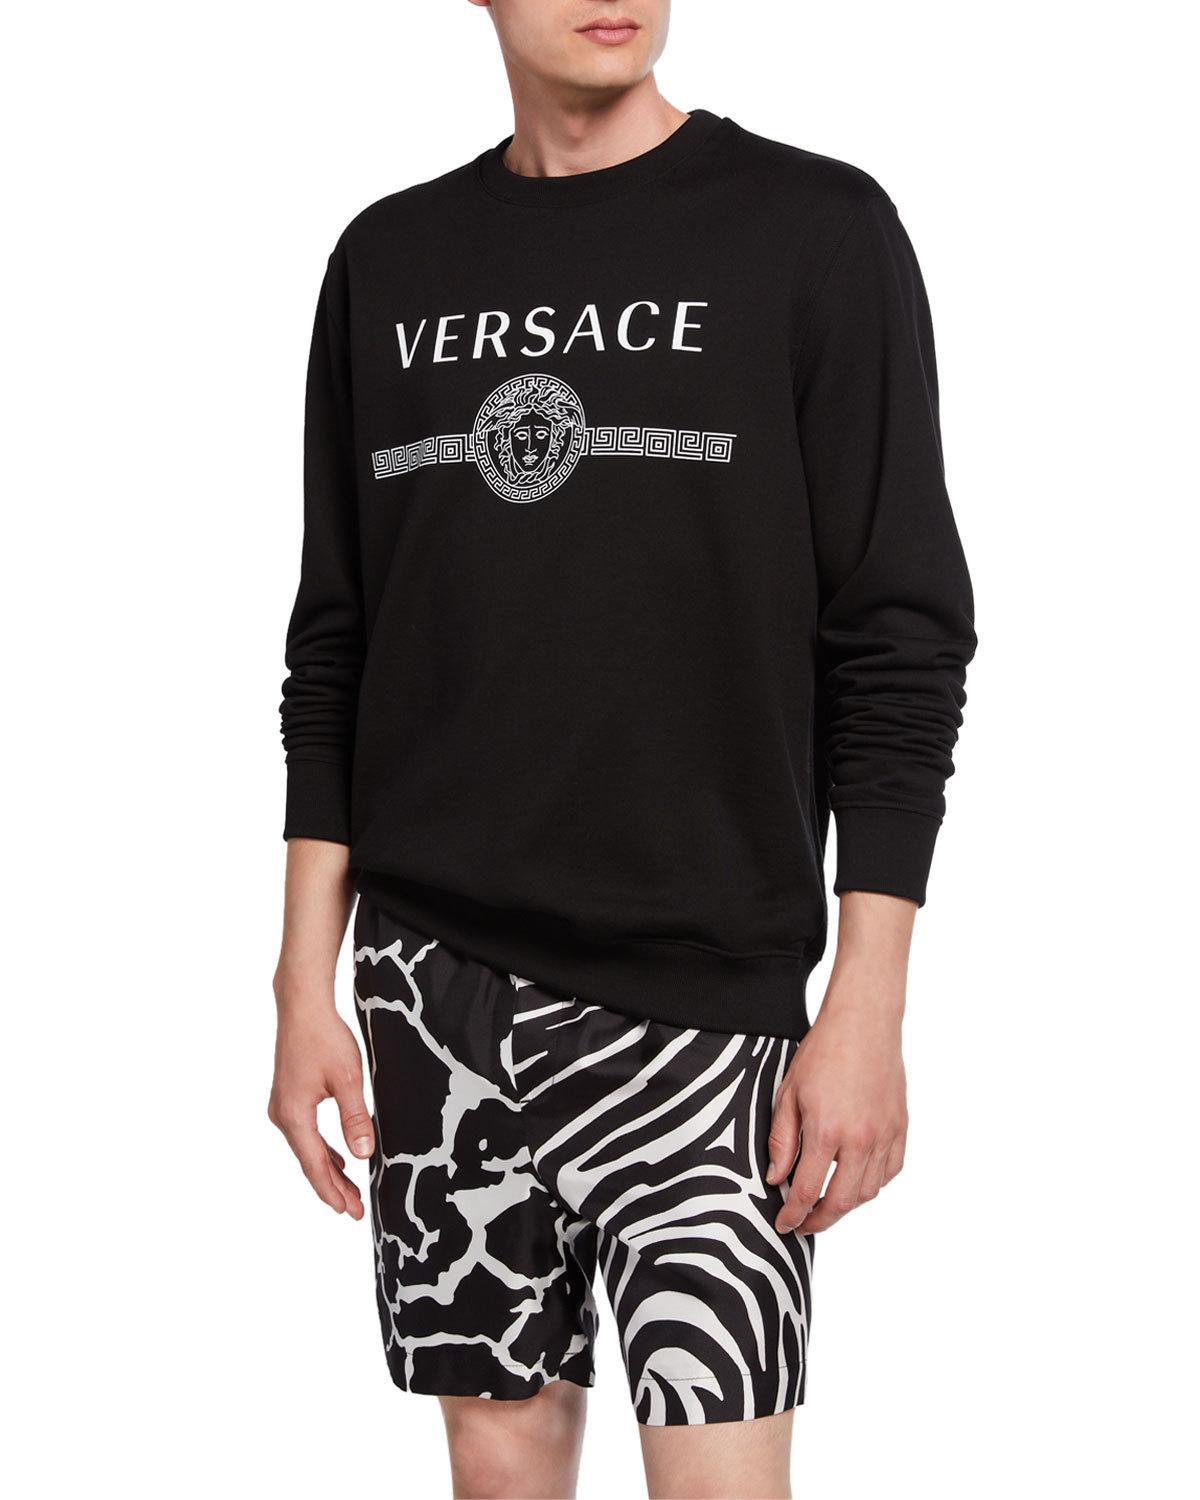 Versace Men's Logo Graphic Cotton Sweatshirt in Black for Men - Lyst